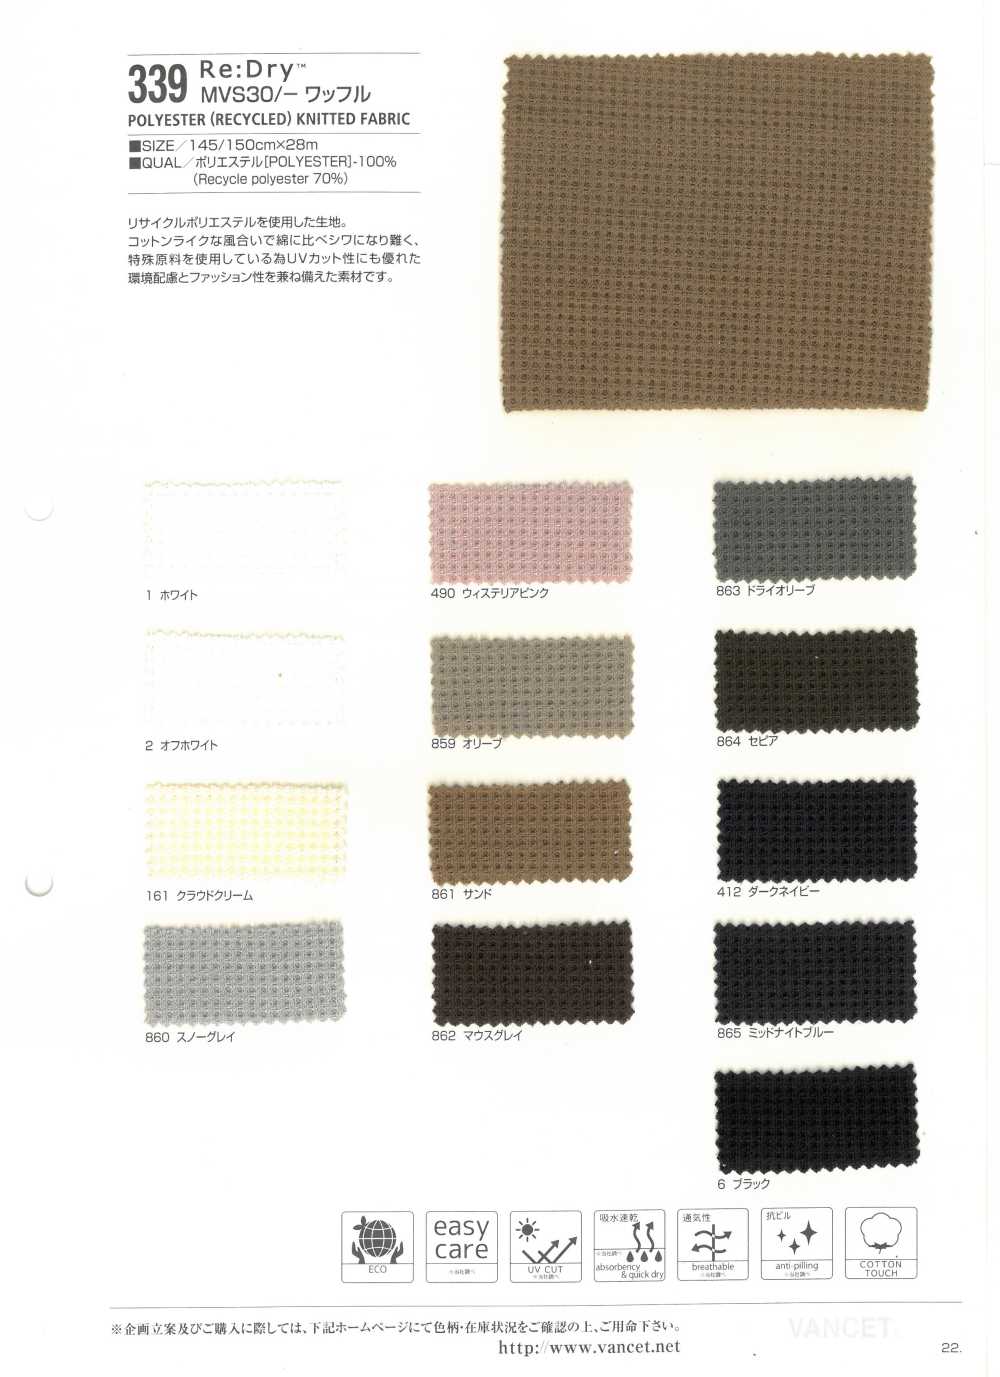 339 Re: Dry (TM) MVS 30 / Waffle Knit[Textile / Fabric] VANCET